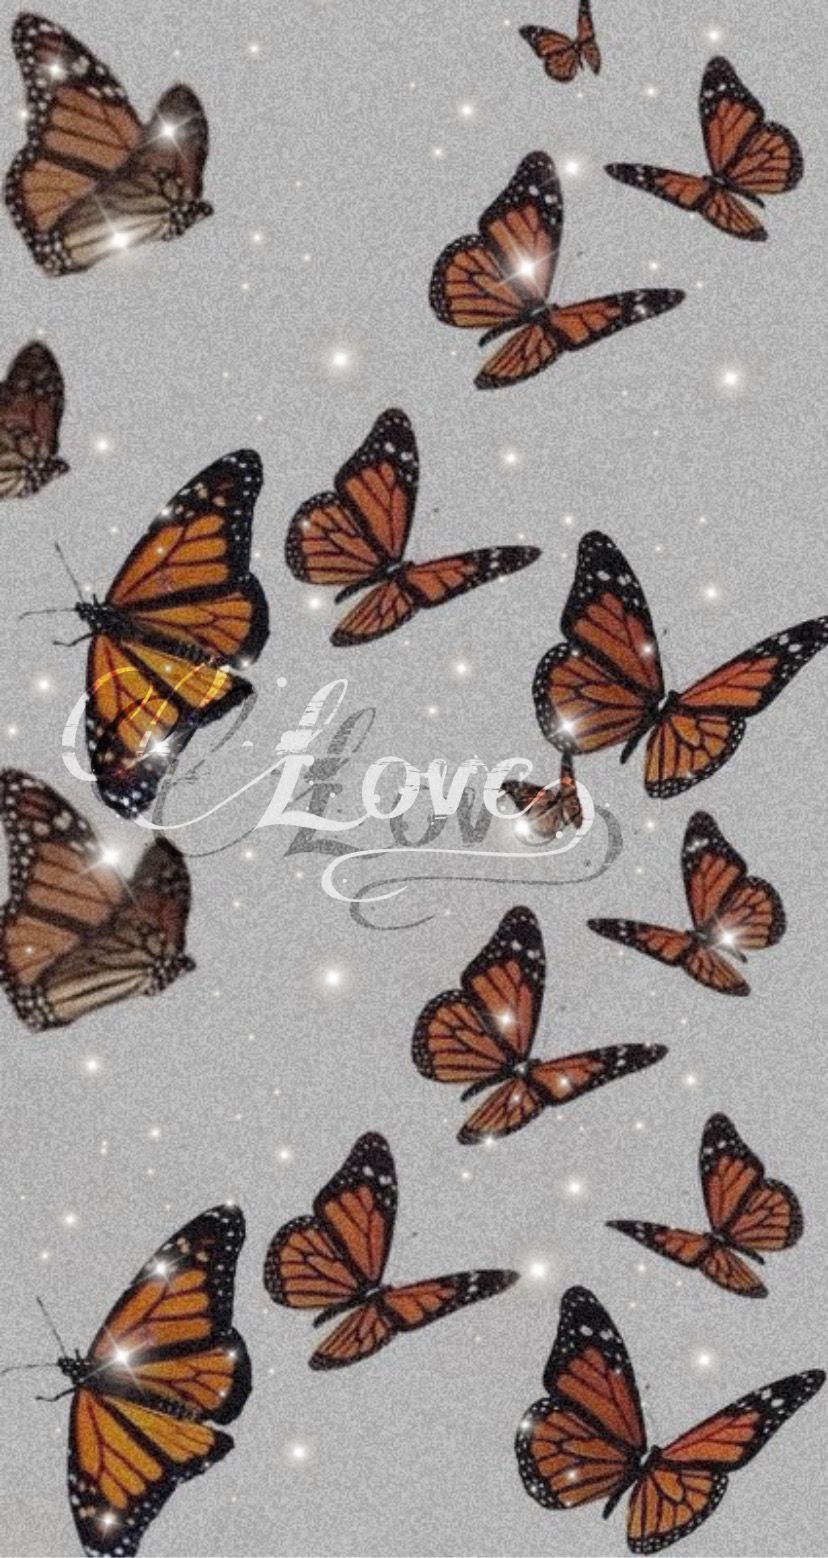 Cute butterfly wallpaper. Butterfly wallpaper iphone, Butterfly wallpaper background, Butterfly wallpaper